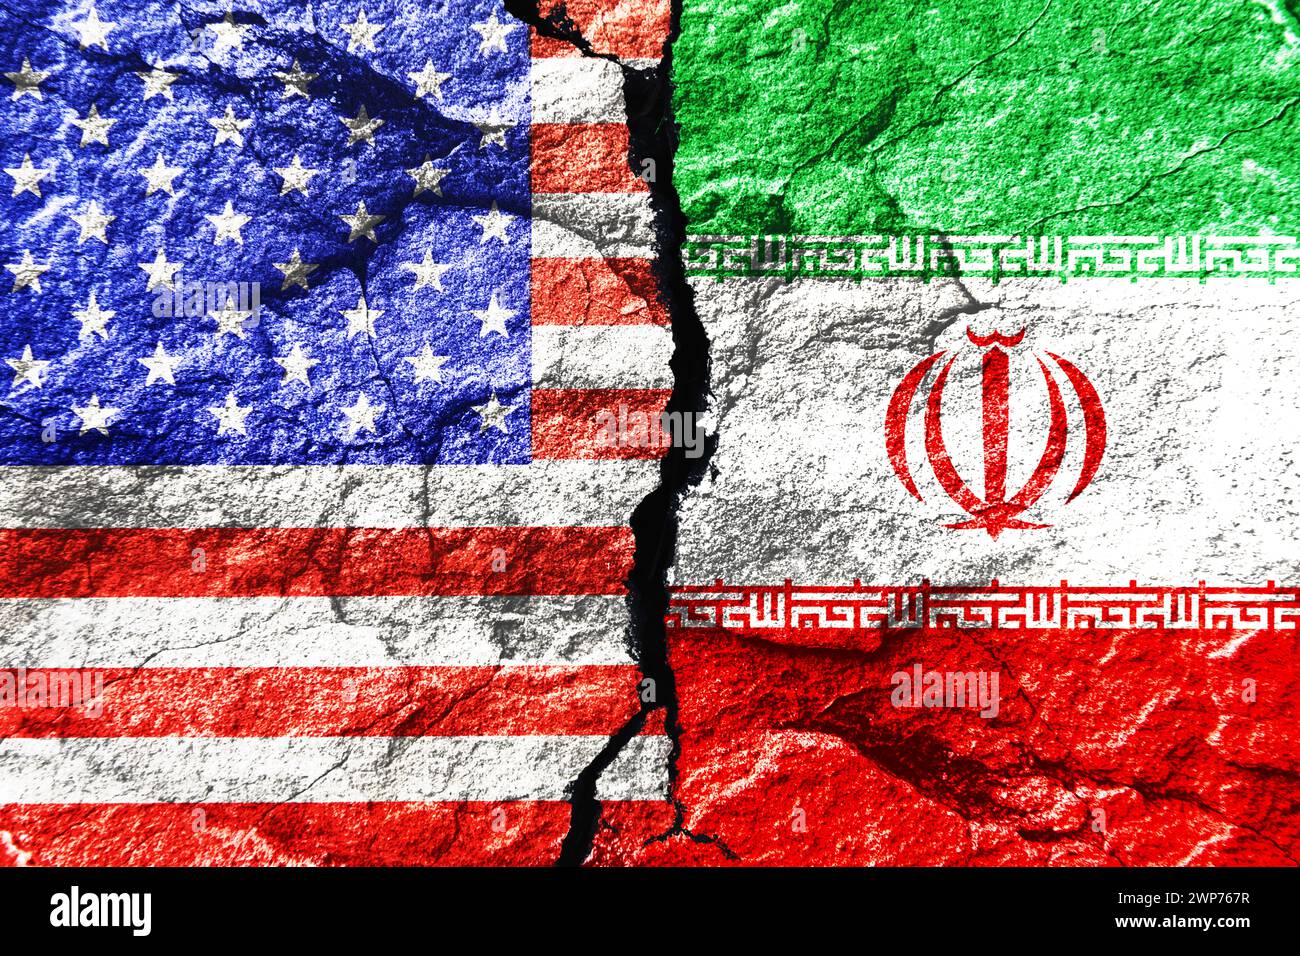 FOTOMONTAGE, Fahnen von den Vereinigten Staaten und Iran auf gebrochenem Grund Stock Photo